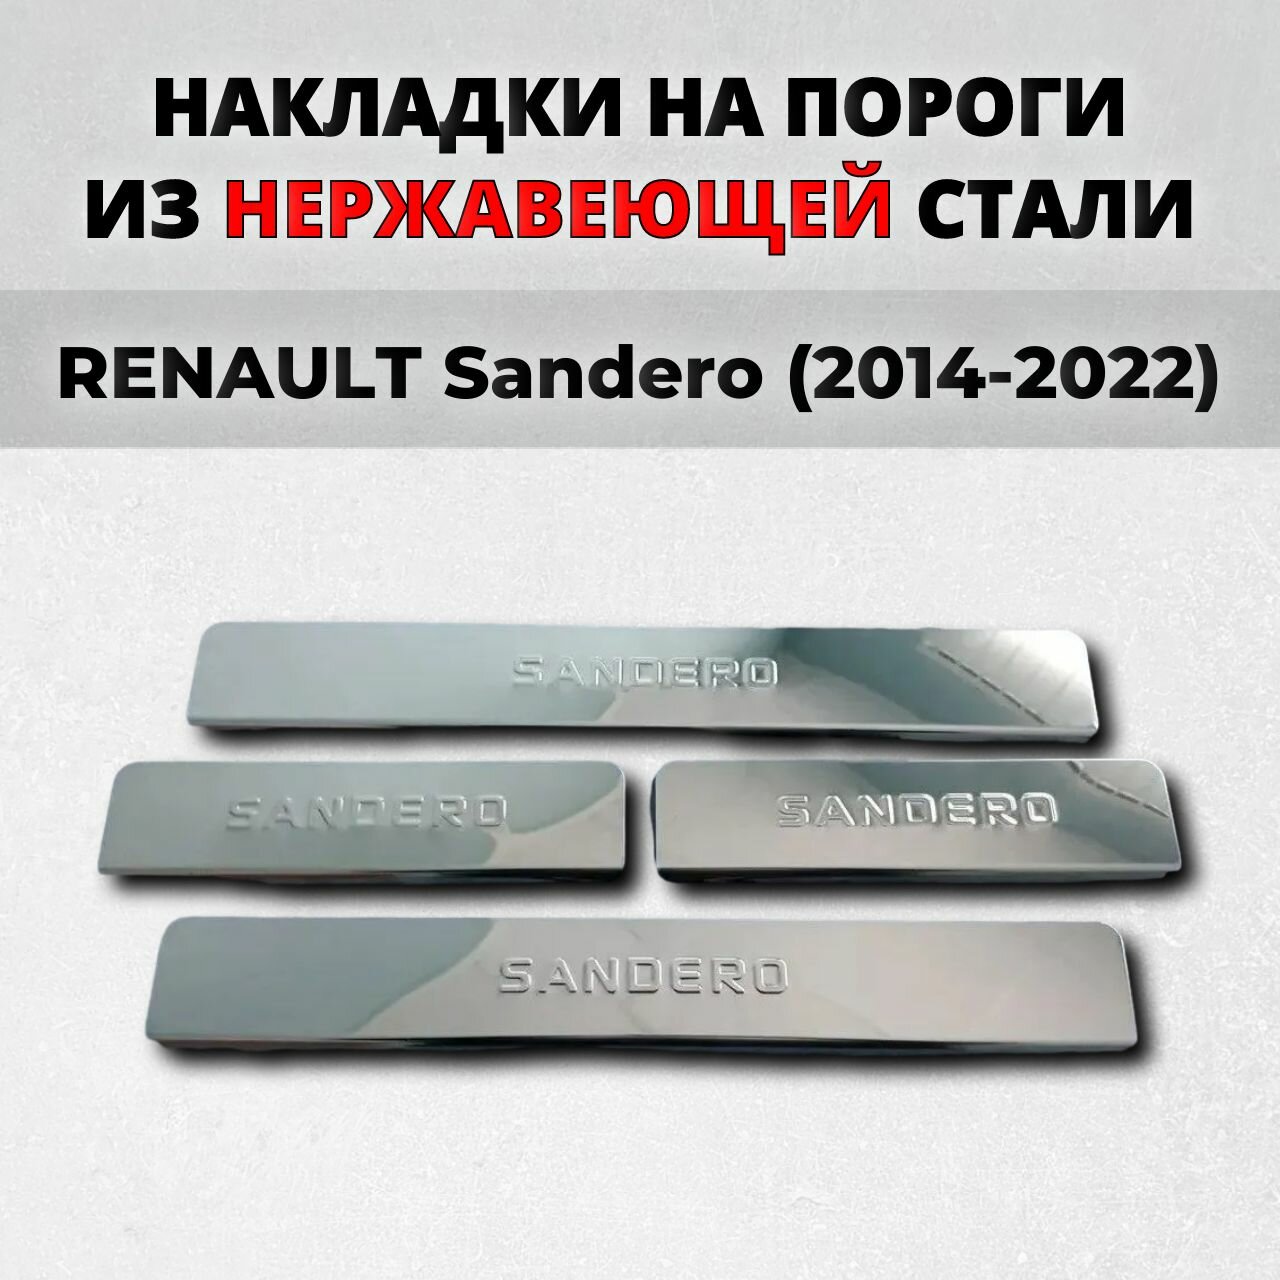 Накладки на пороги Рено Сандеро 2014-2022 из нержавеющей стали RENAULT Sandero